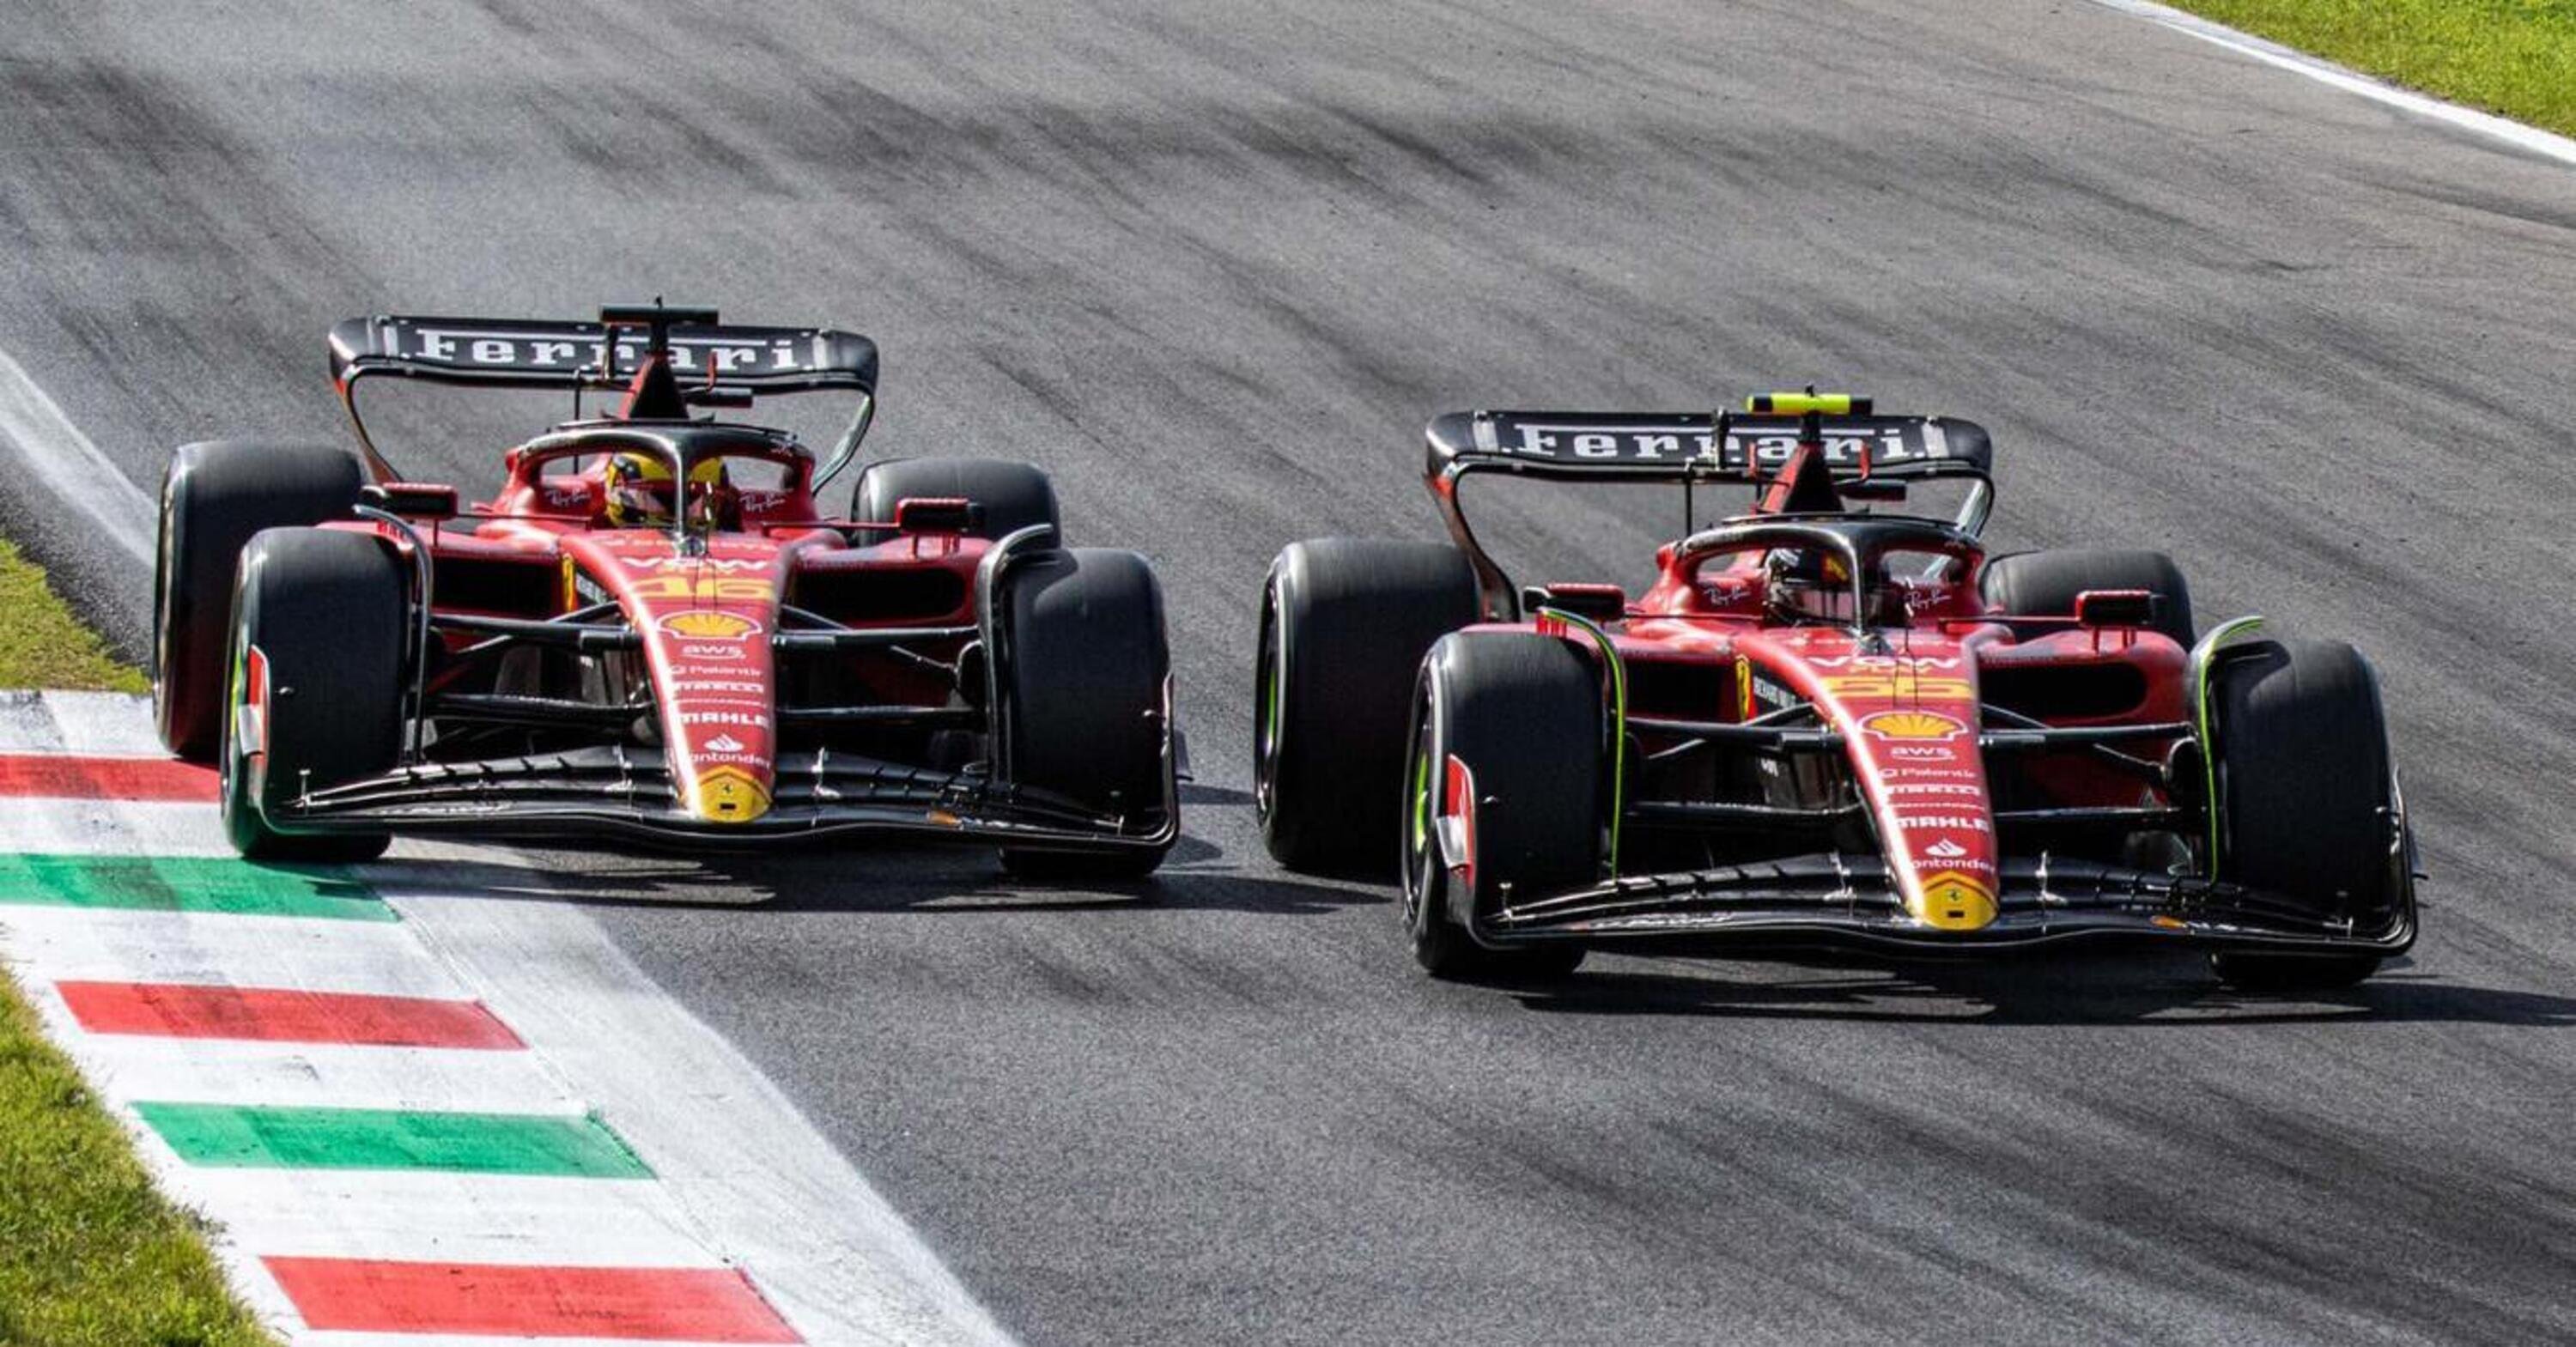 F1: Ferrari: Sainz-Leclerc, lasciate che sia la pista a parlare